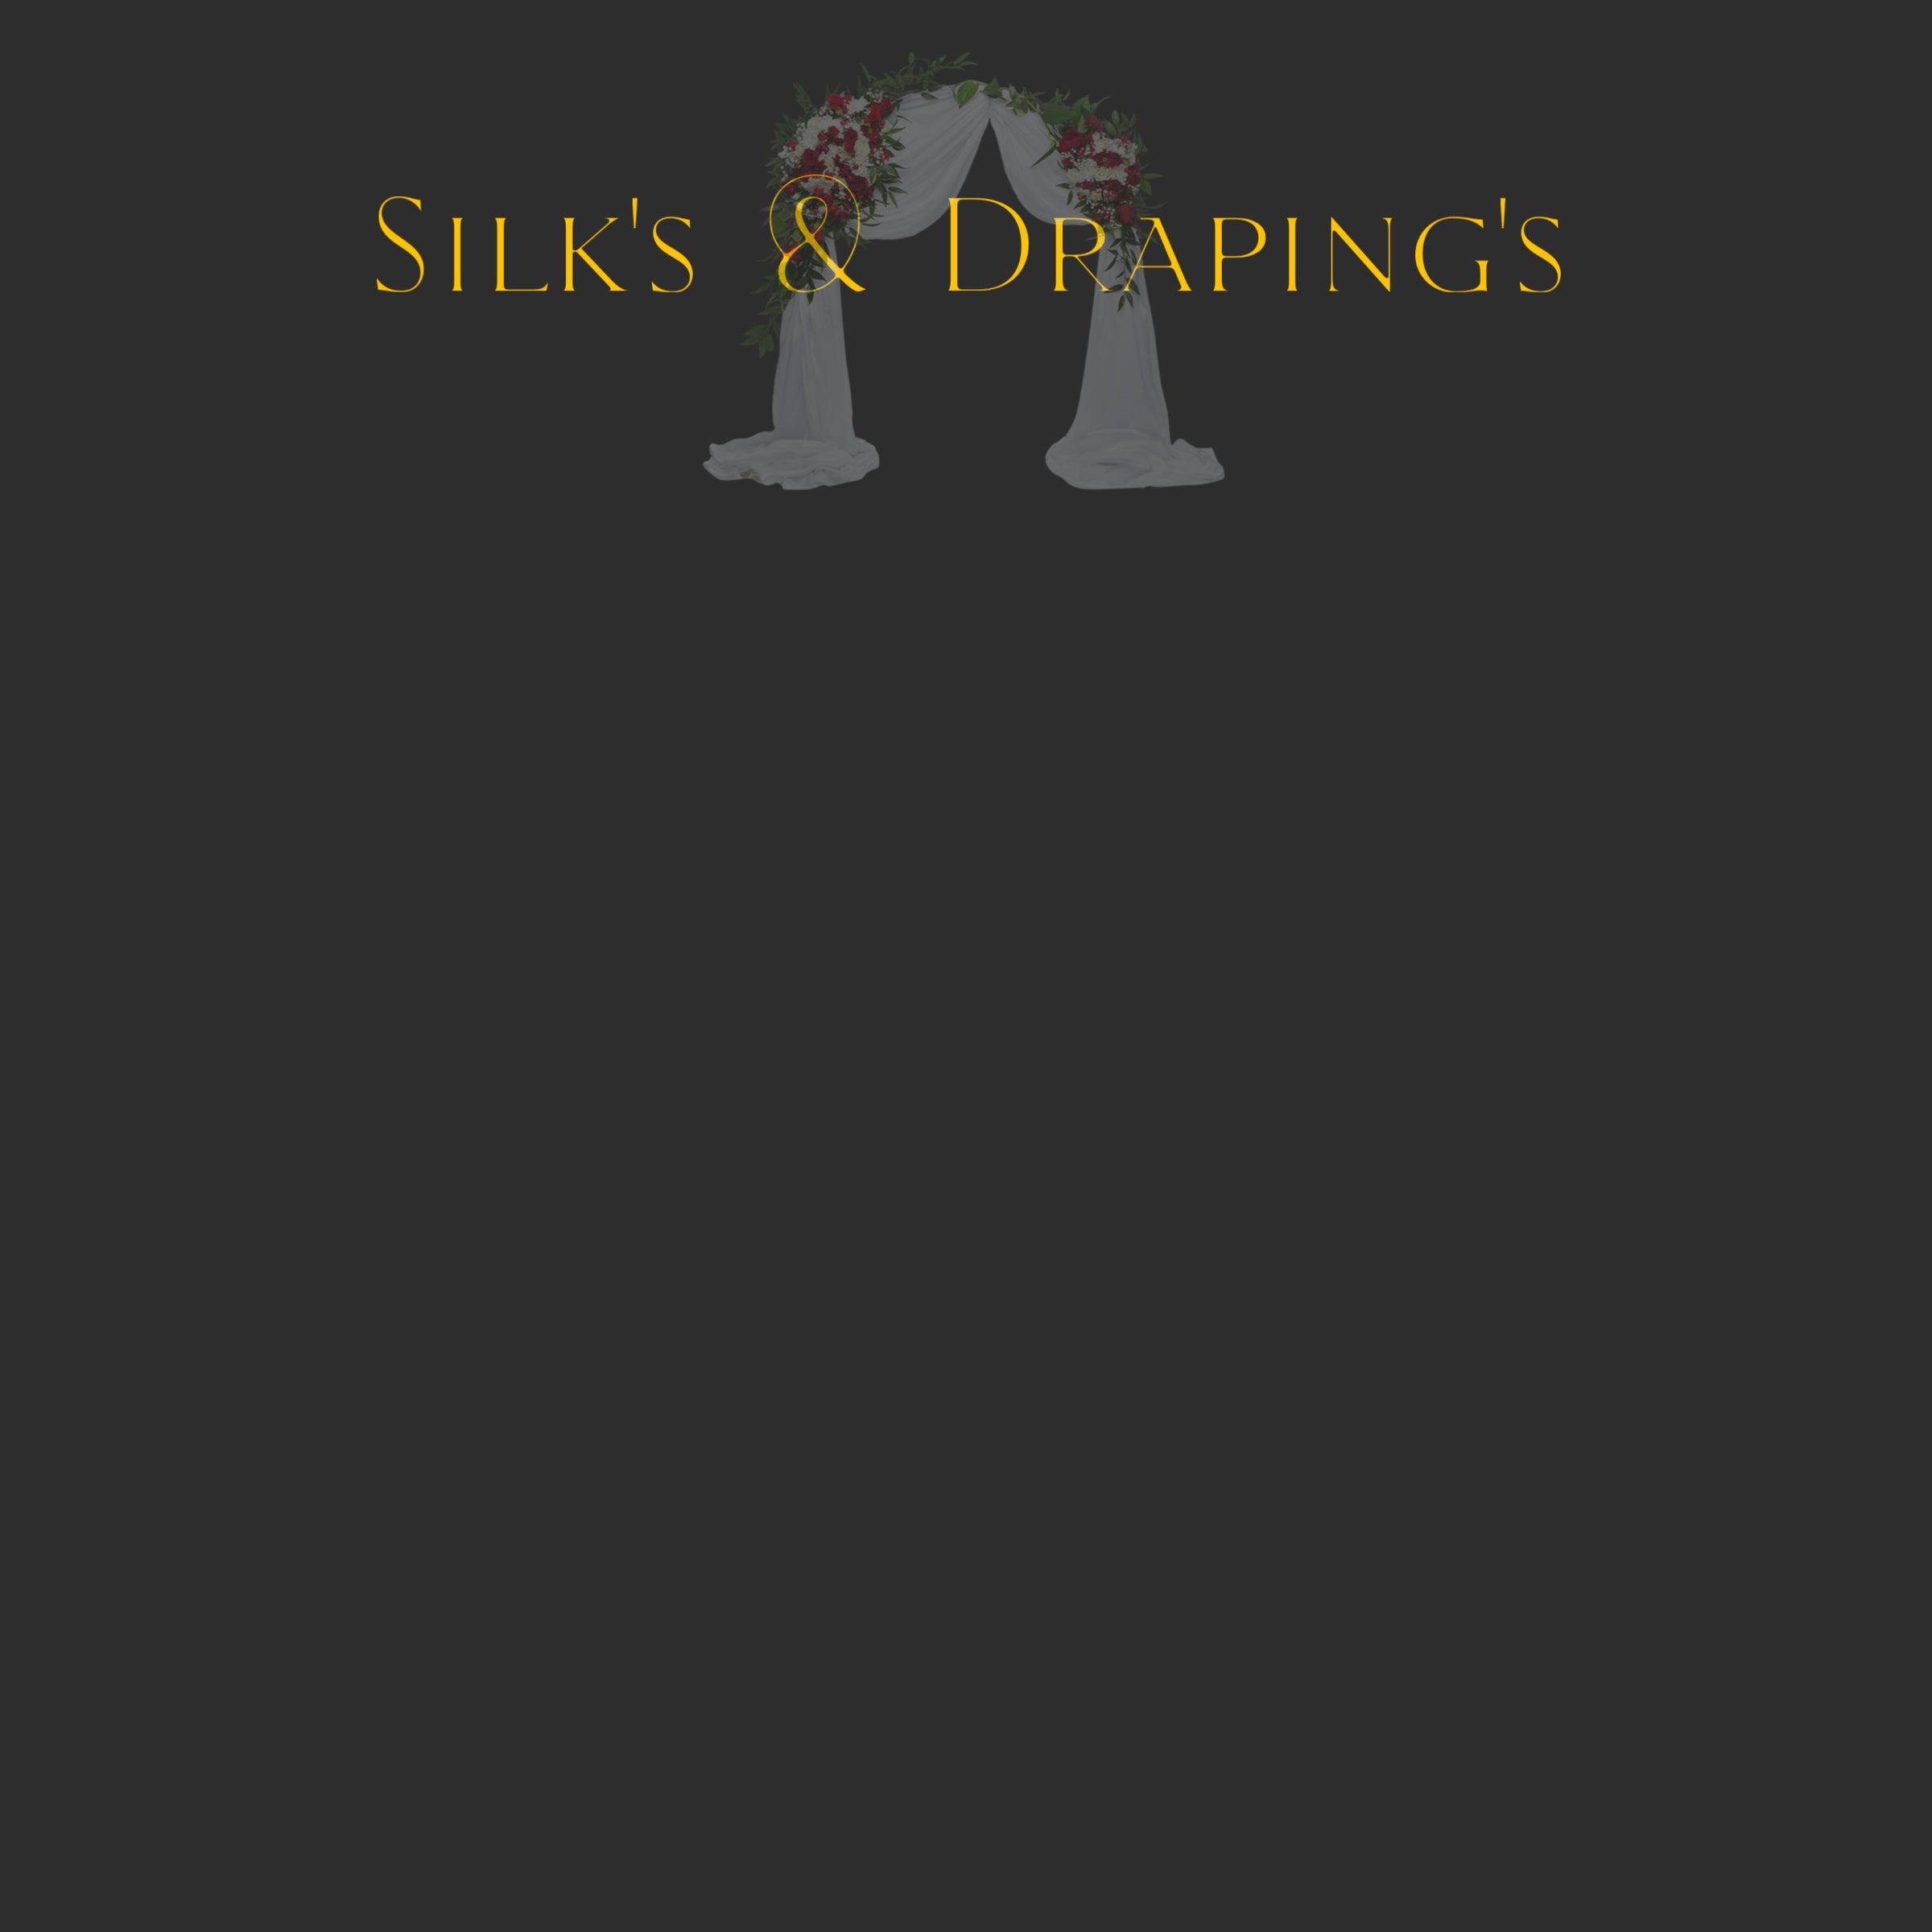 Silks & Draping's